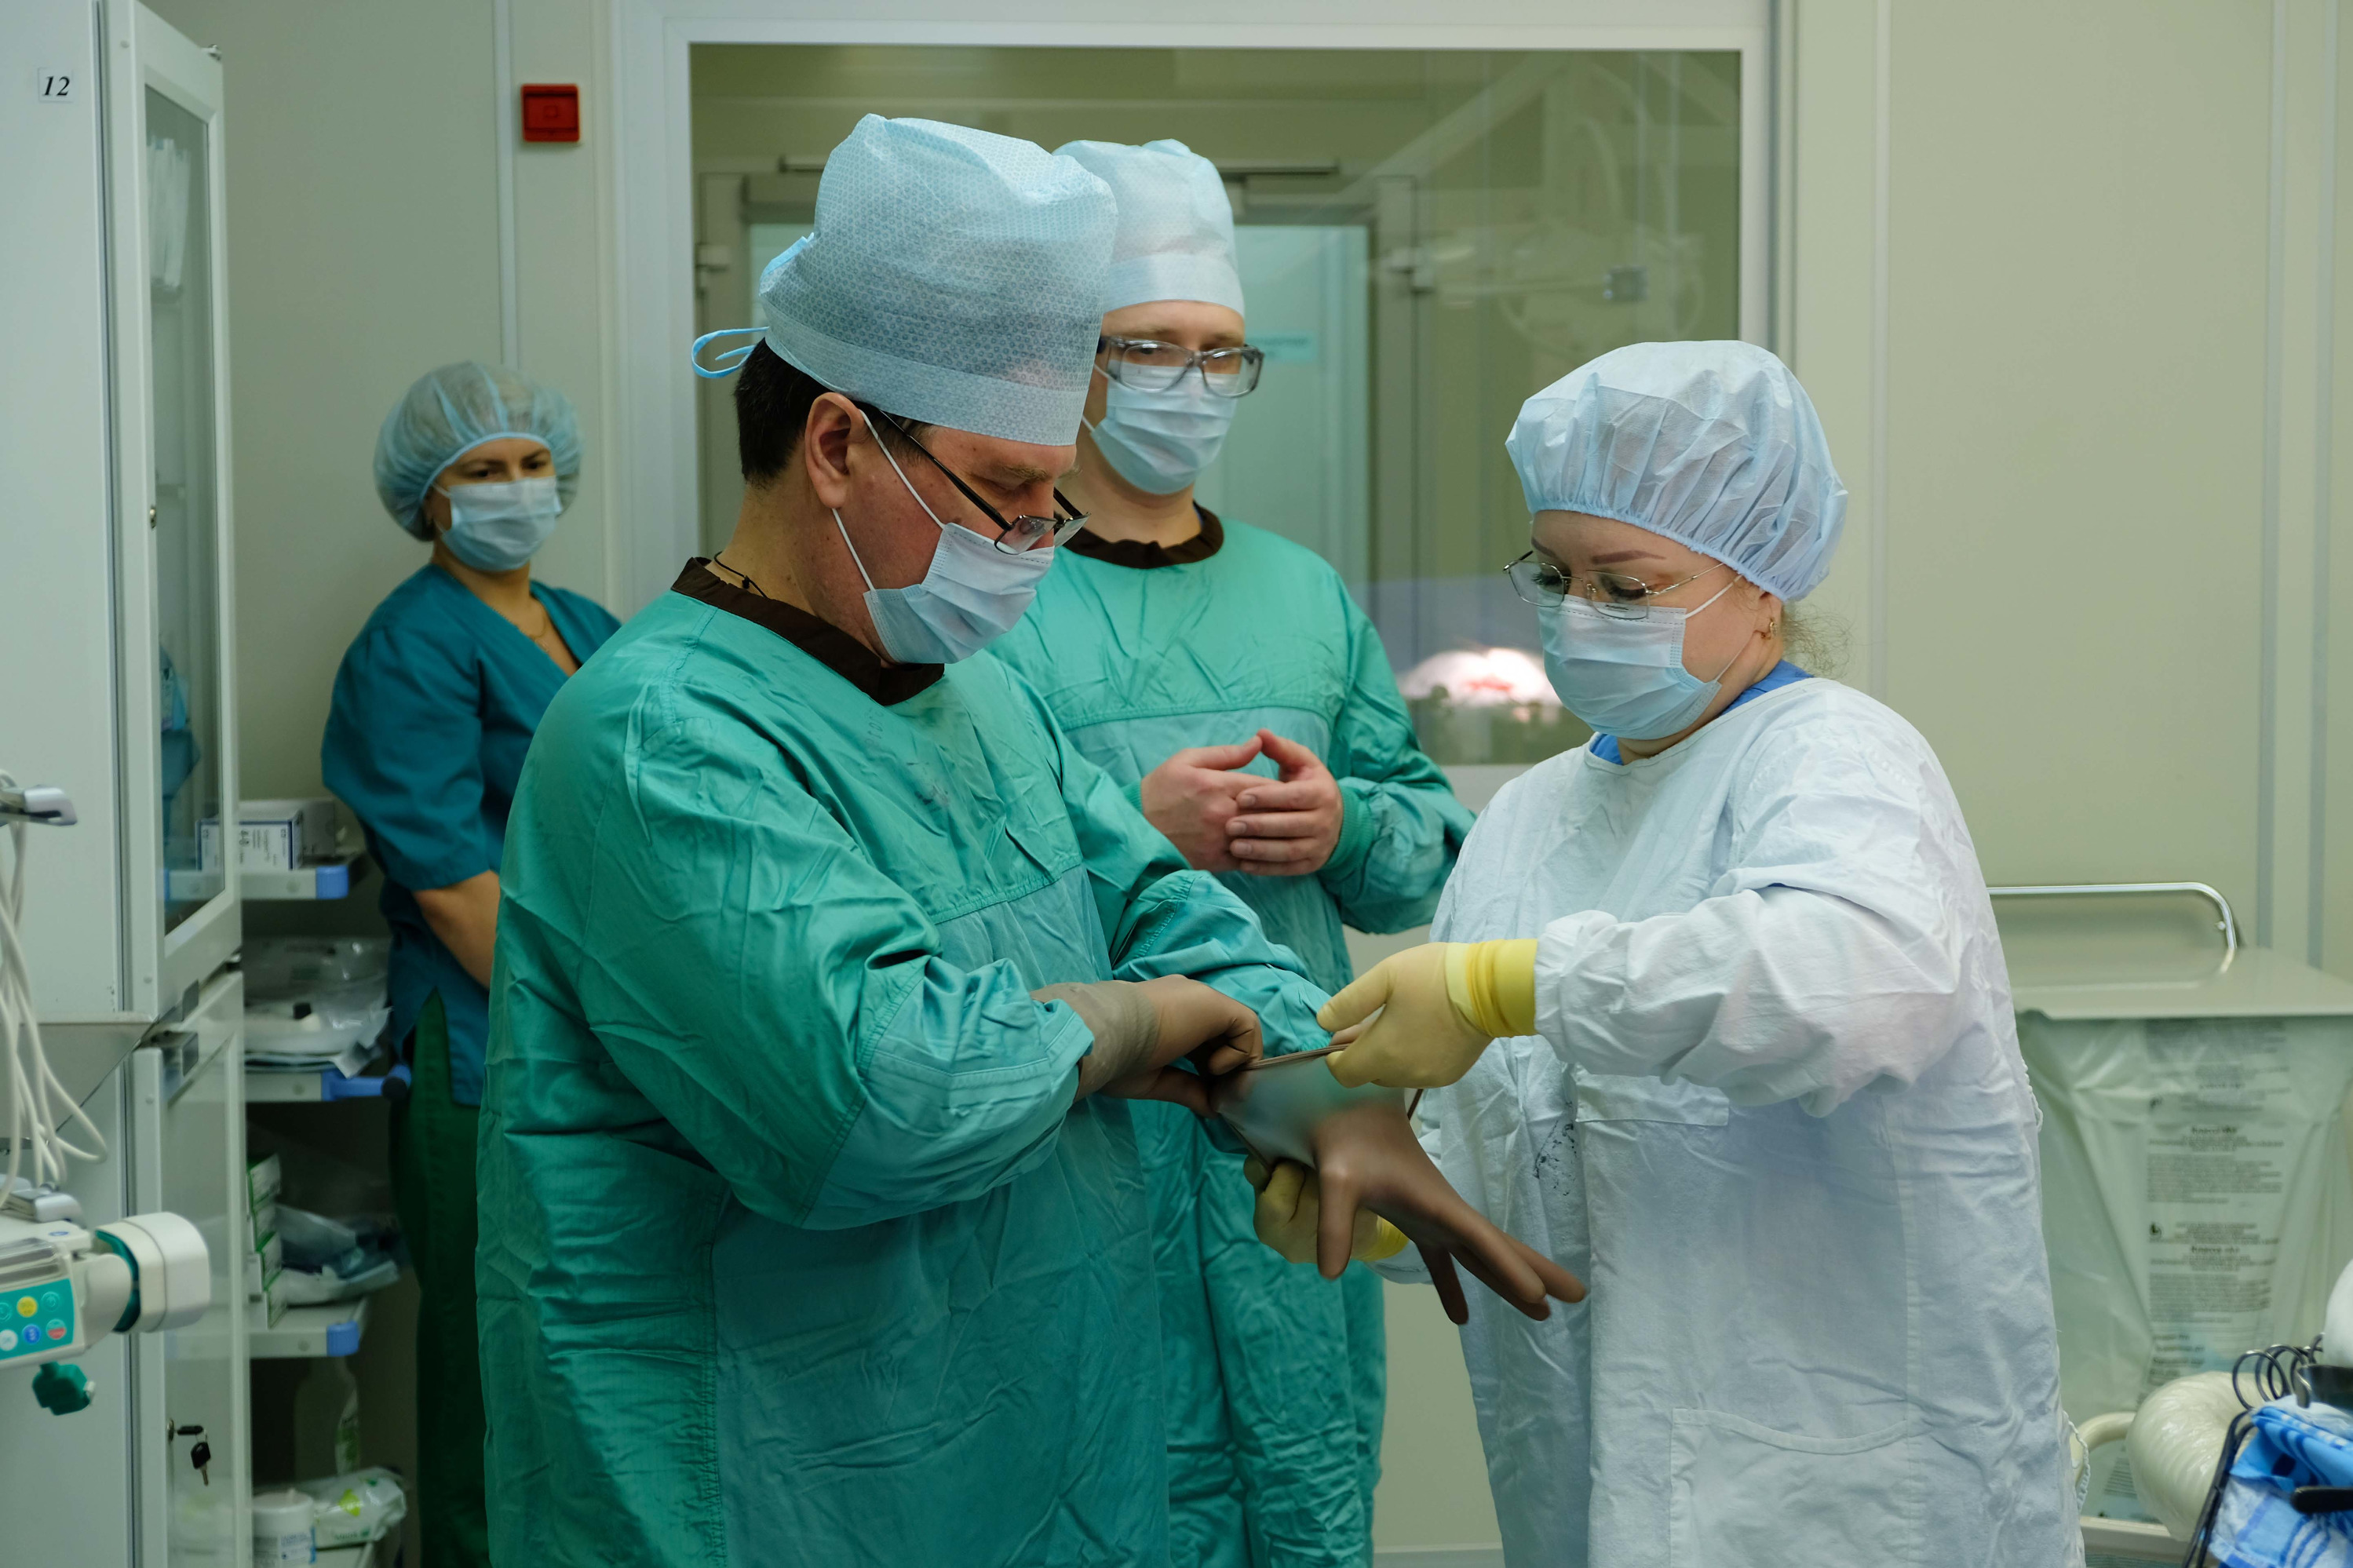 В Екатеринбурге онкологи спасли пациентку с неизлечимой опухолью